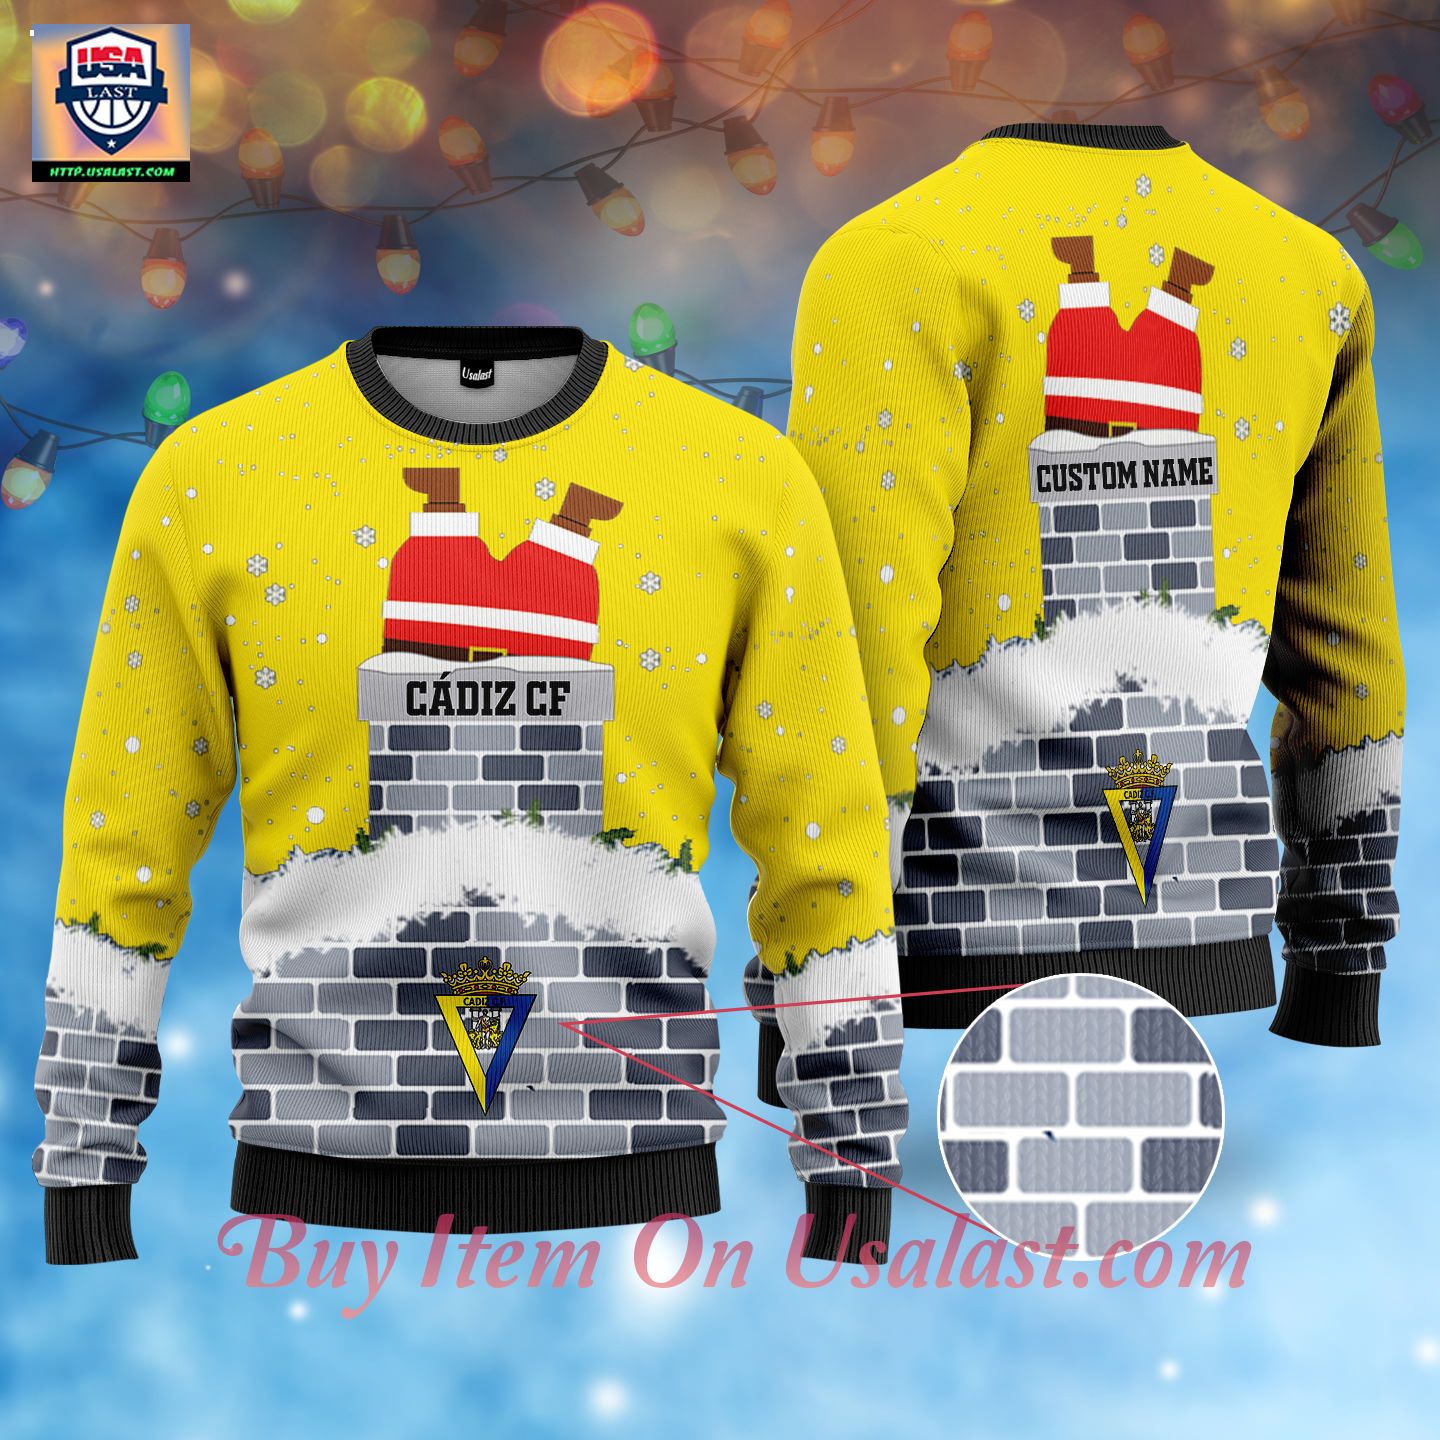 C�diz CF Santa Claus Custom Name Ugly Christmas Sweater - Cool DP